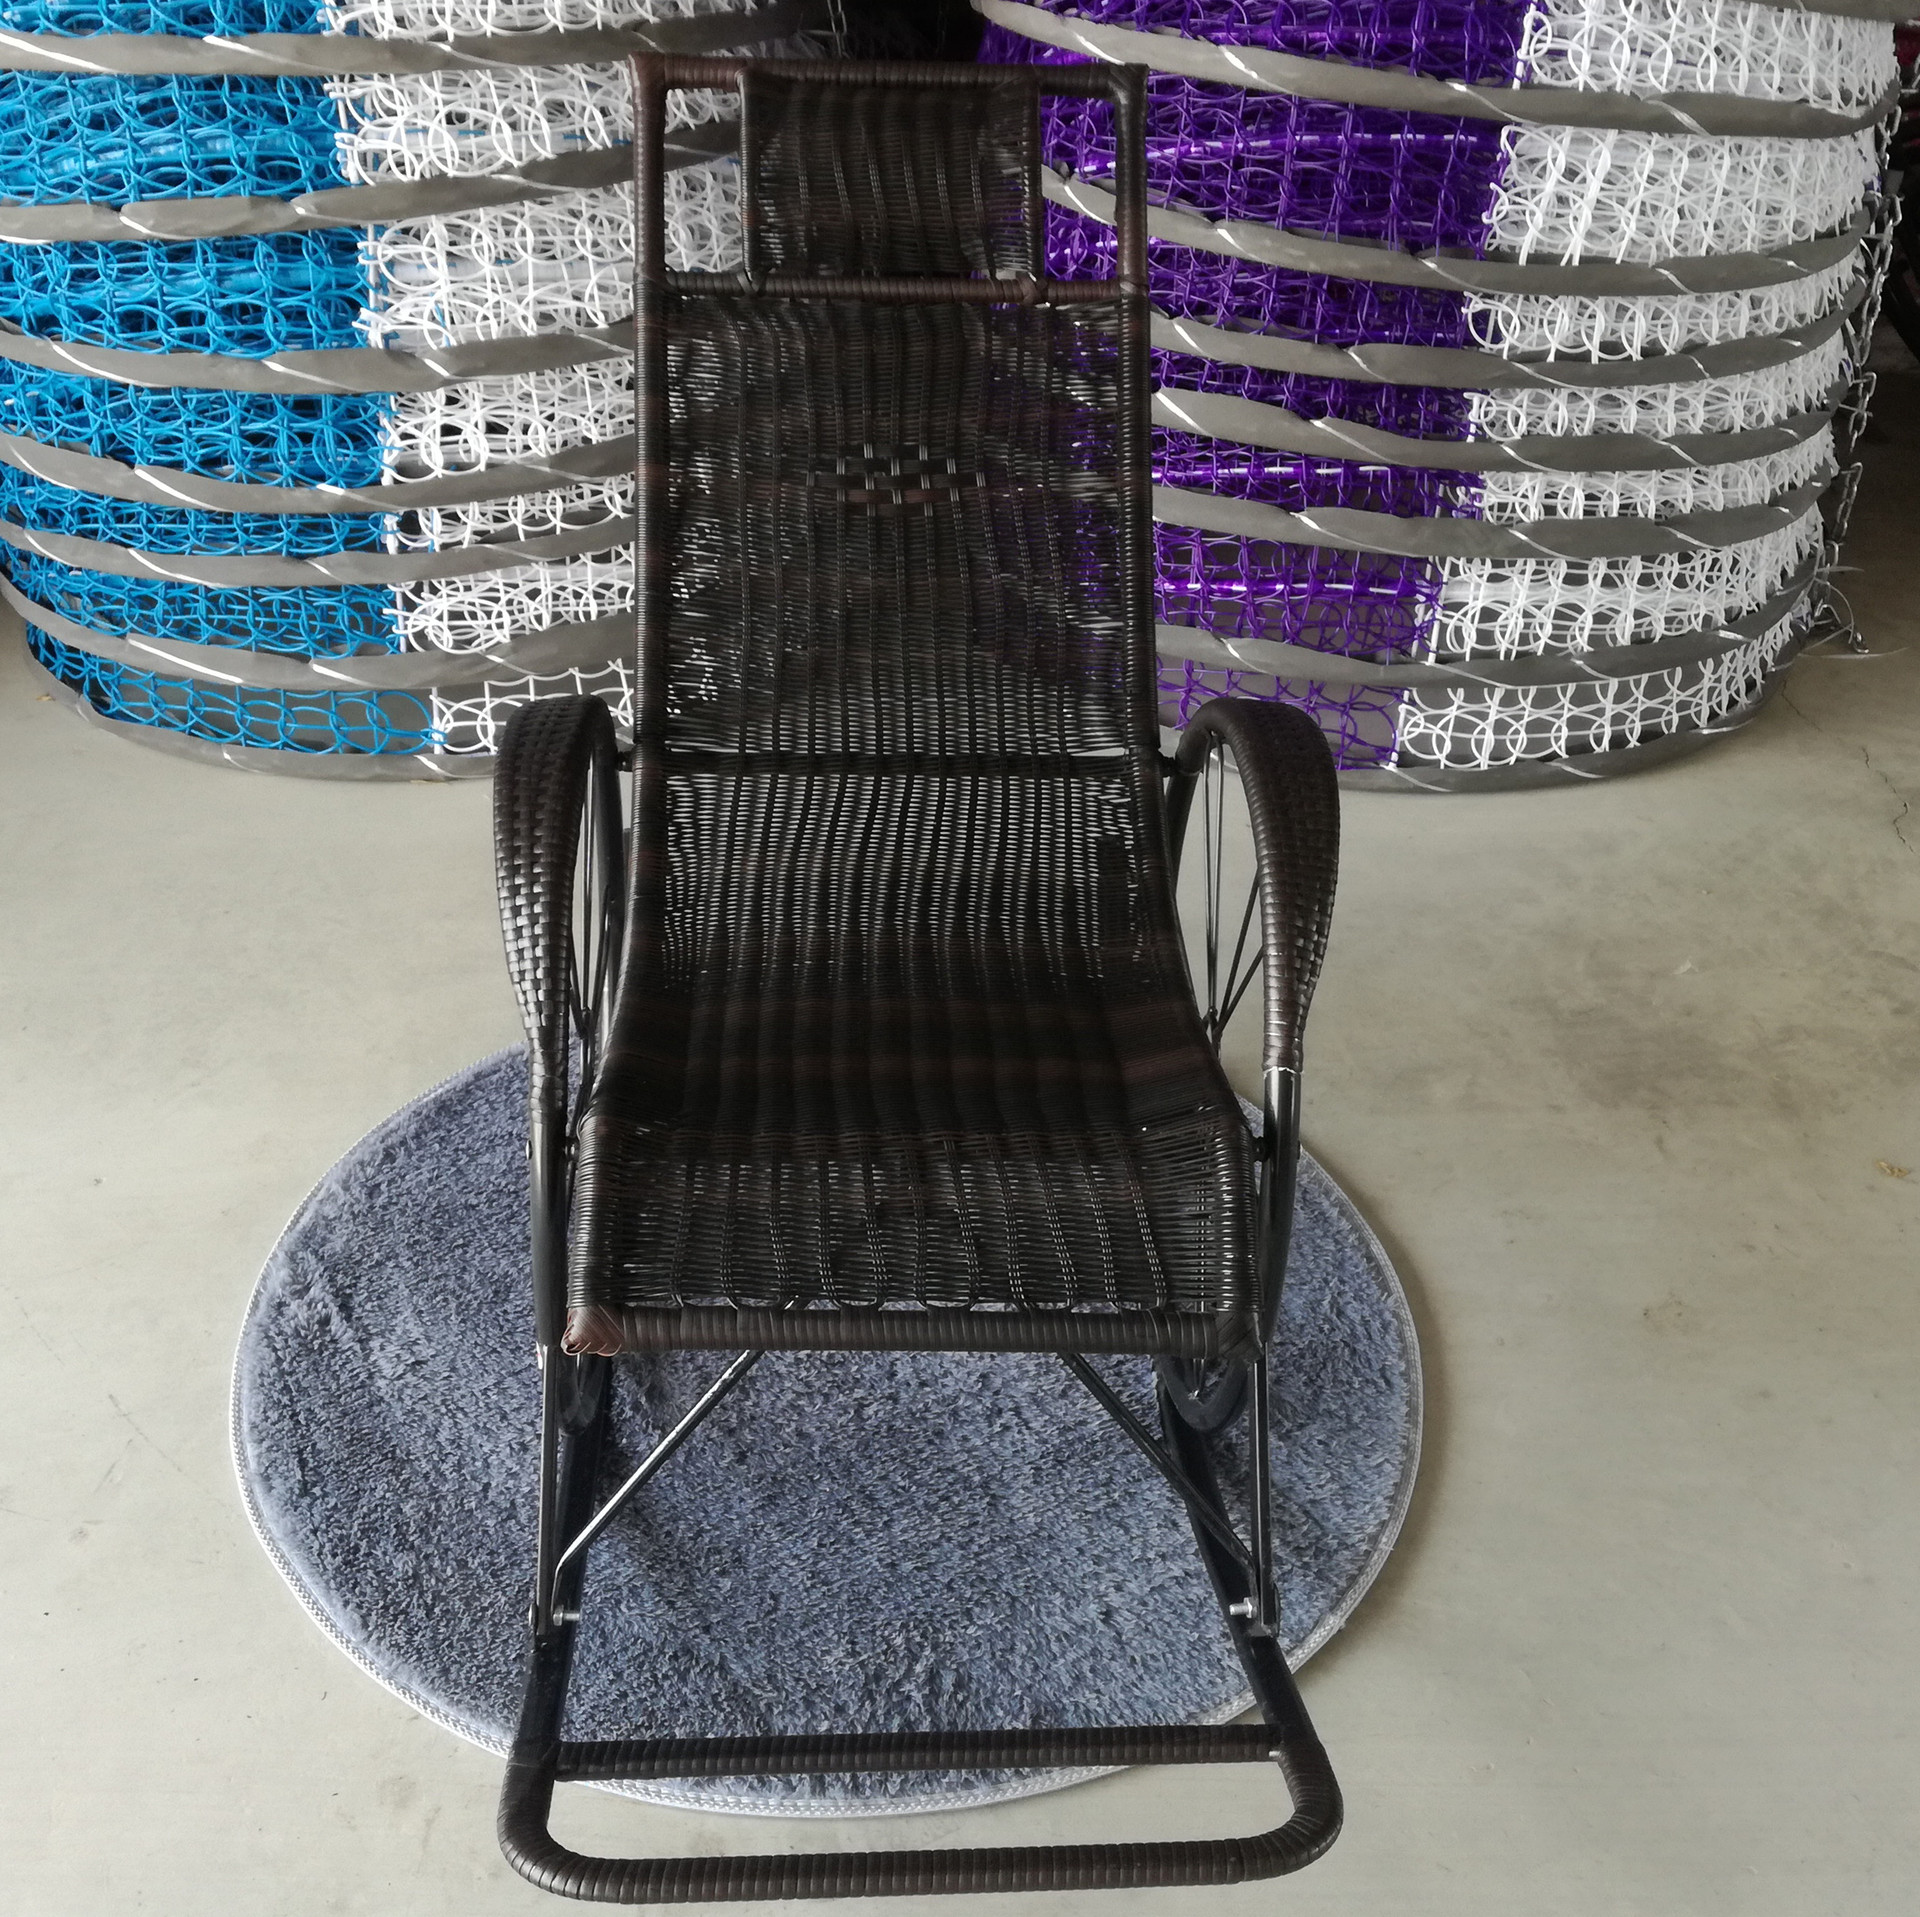 逍遥椅 藤编躺椅 摇摇椅 厂家直销双轮摇椅 质量可靠一件代发1